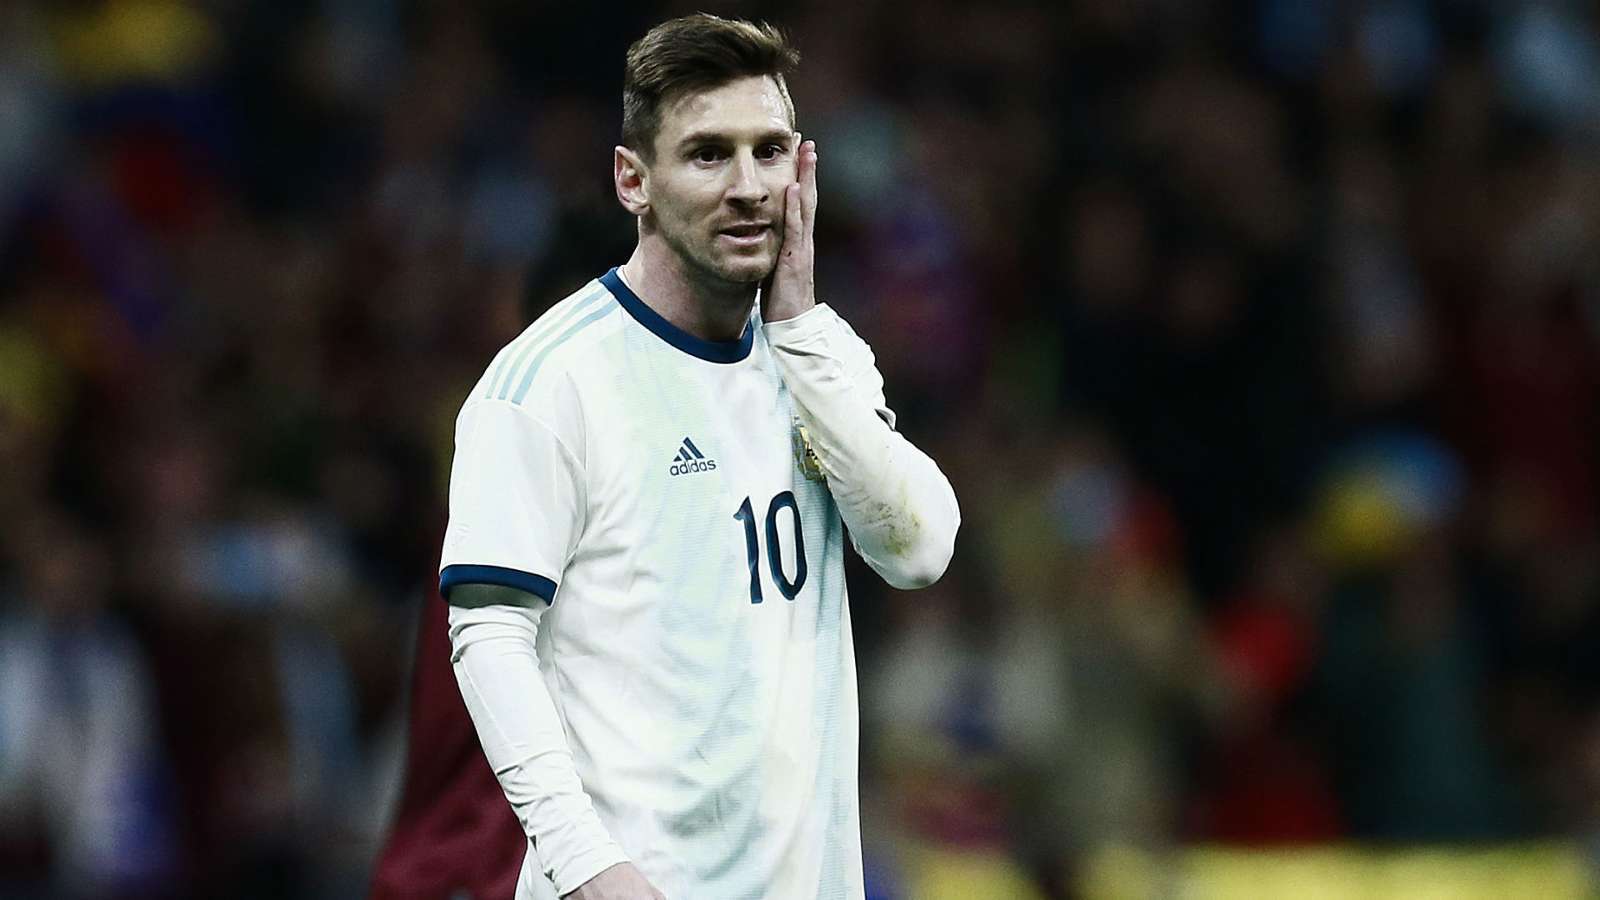 Argentina thua bẽ bàng trong ngày Messi tái xuất